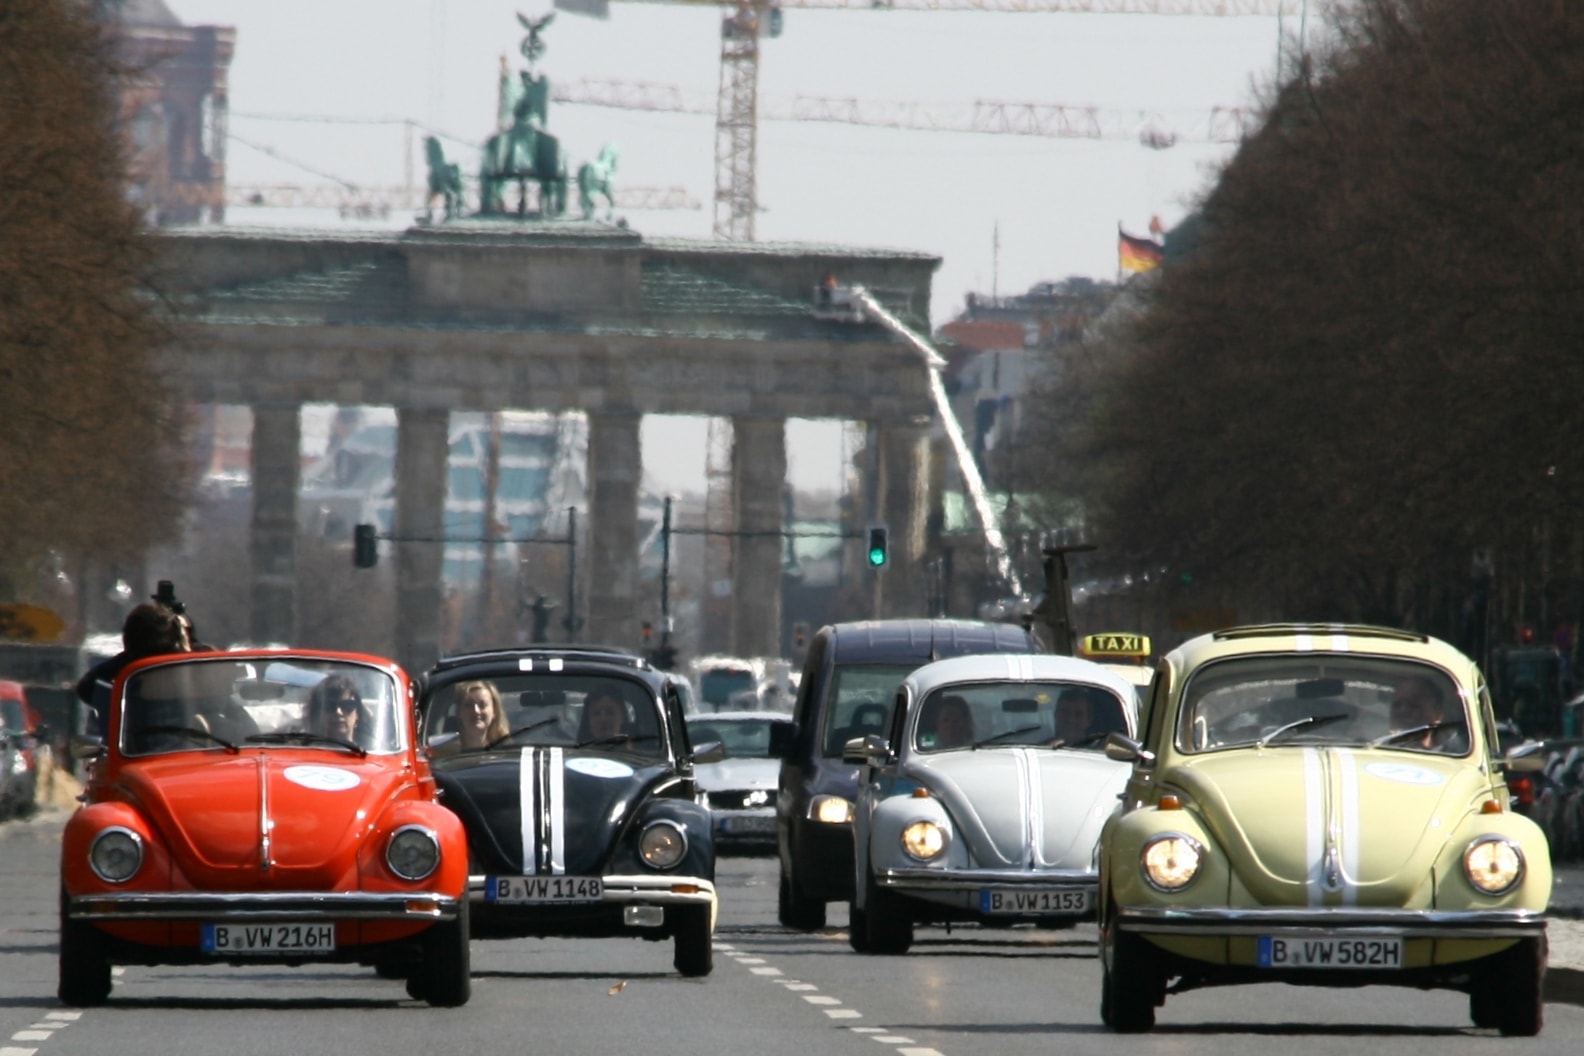 ビートル フォルクスワーゲン Volkswagen Beetle 生産終了 タイプ1 ヒトラー ヴィンテージカー